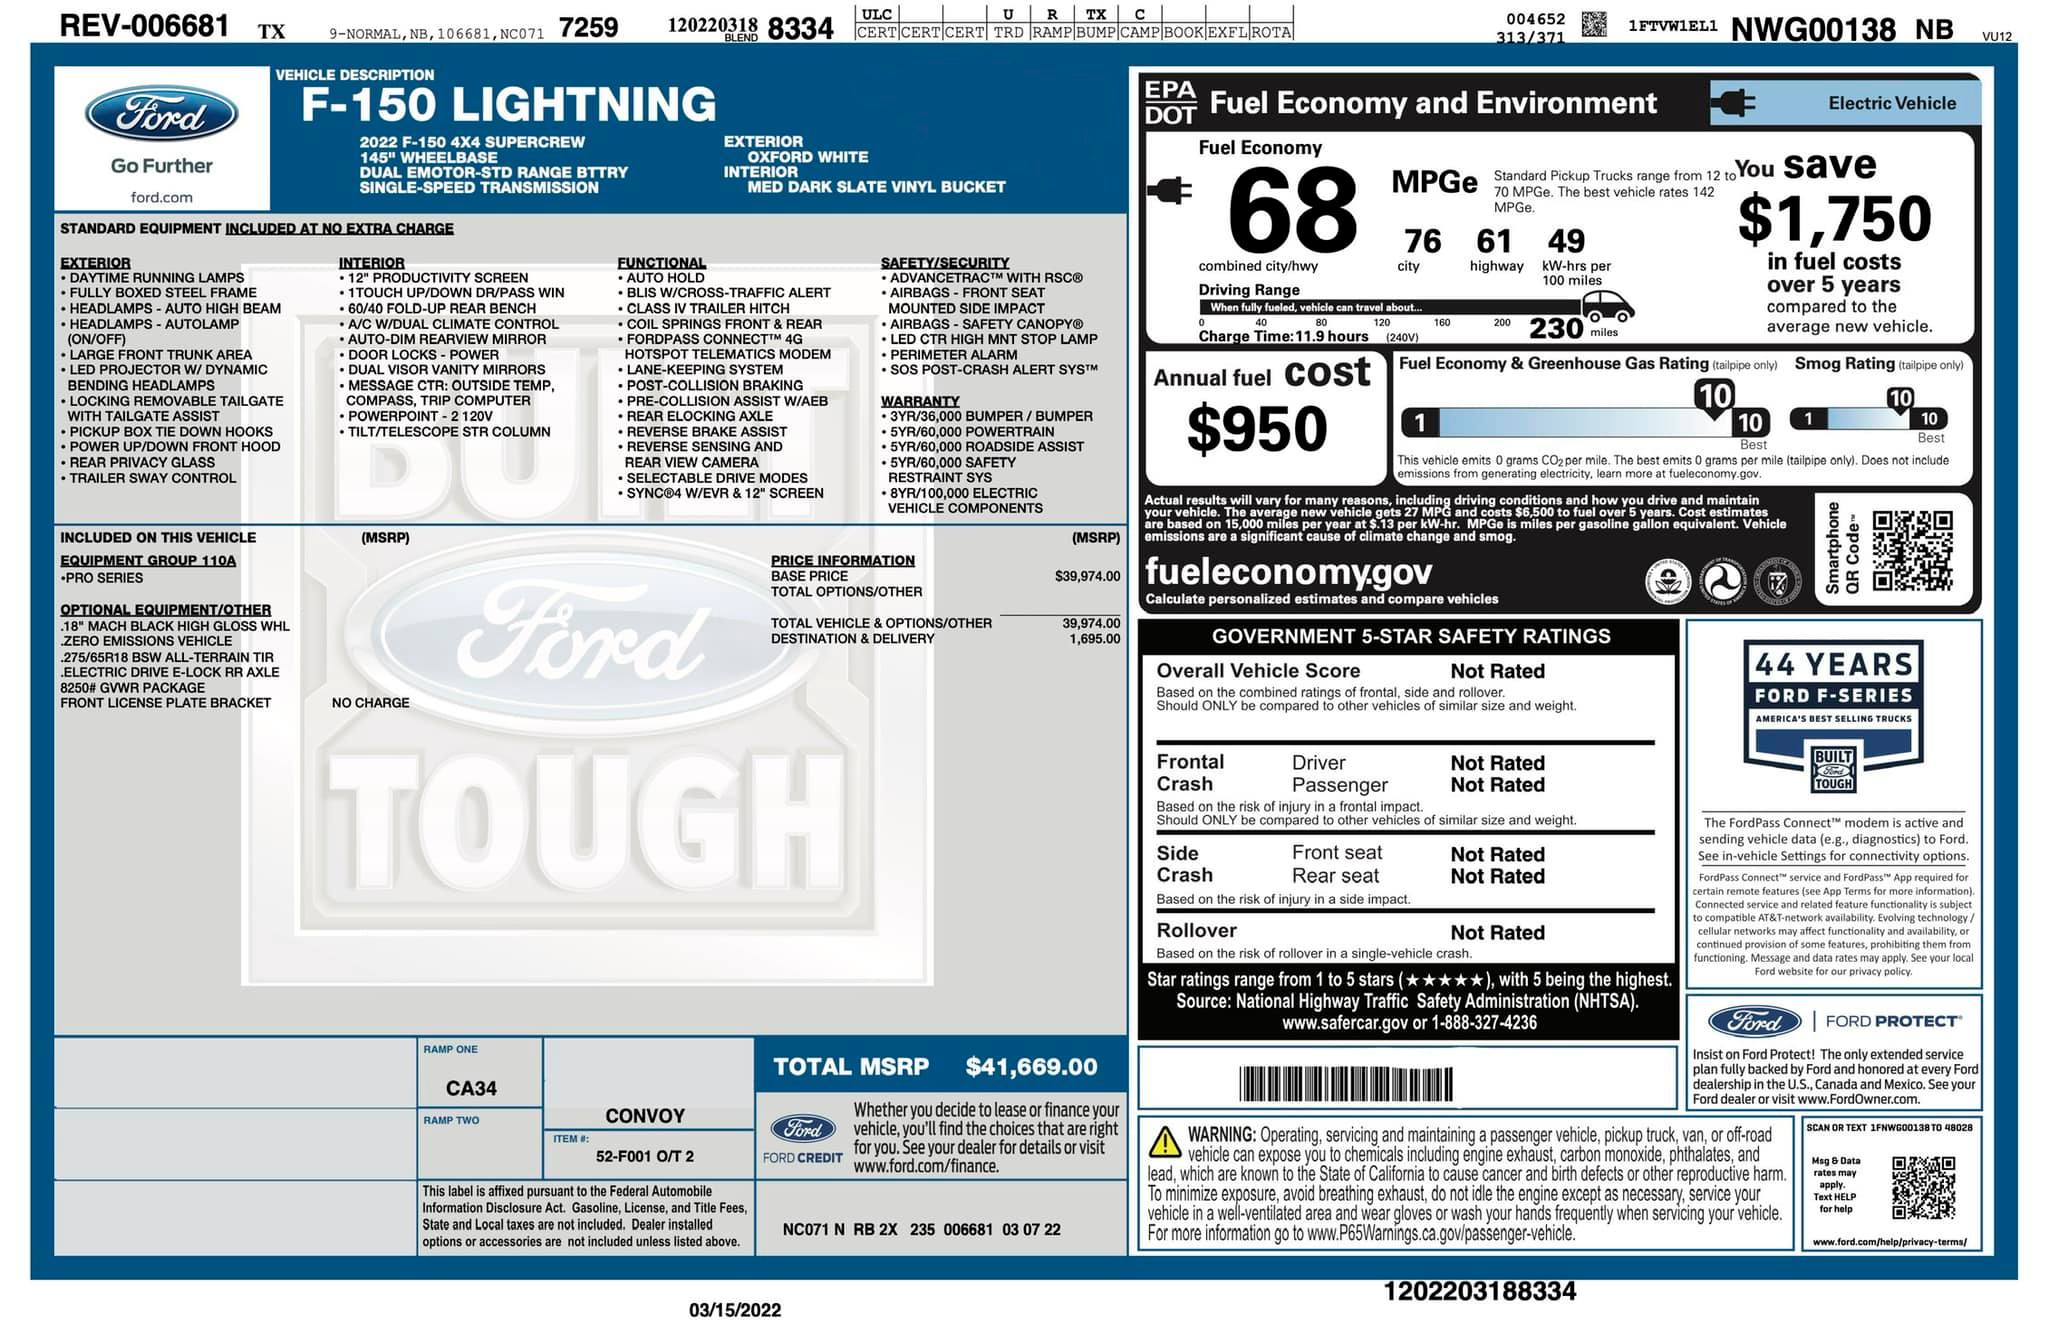 Ford F-150 Lightning F-150 Lightning Official EPA Range MPGe Revealed in Window Sticker (Base + Extended Range)! f150-lightning-window-sticker-epa-m